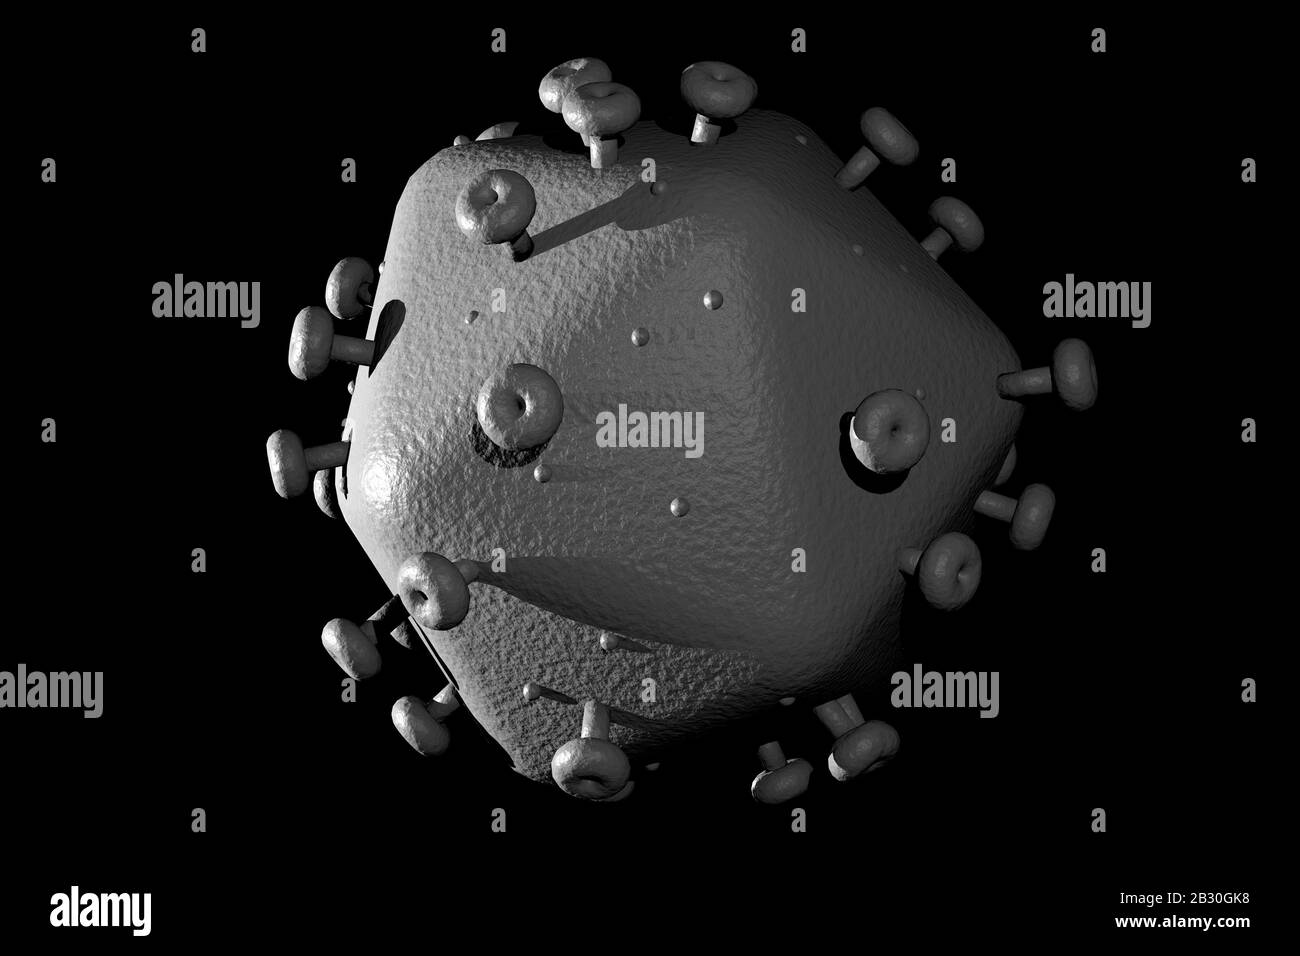 3D generati illustrazione dell'HIV virus dell Aids cellule per la scienza medica lo sfondo Foto Stock